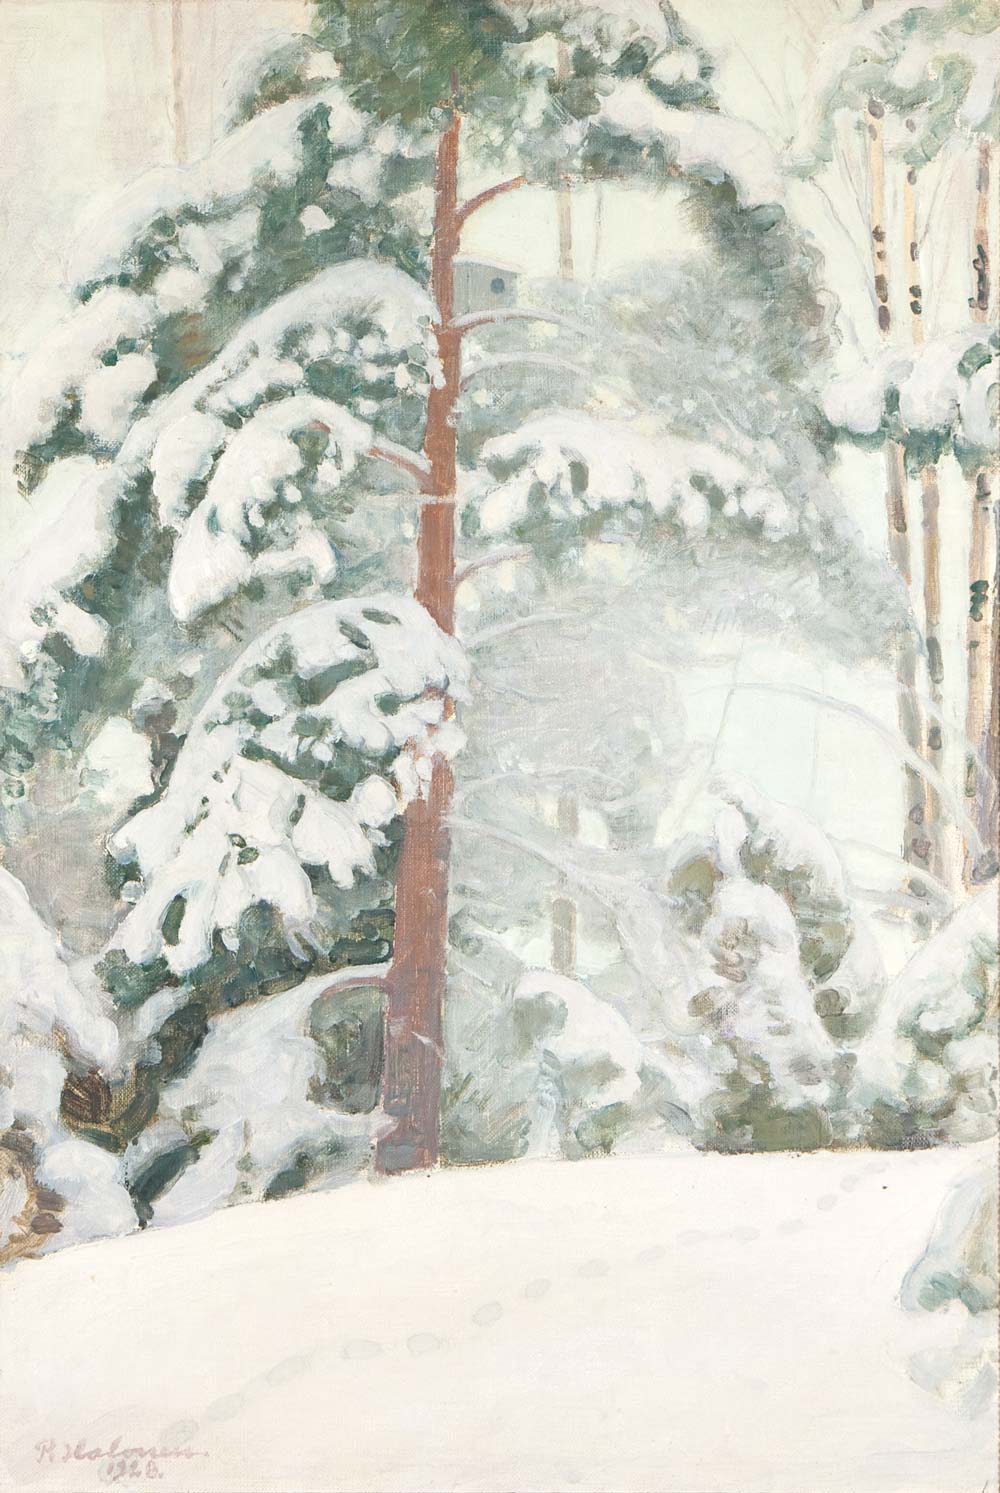 Pekka Halonen, Pine Tree in Snow, 1928, oil on canvas, 74 x 50,5 cm. Photo: Saara Salmi.